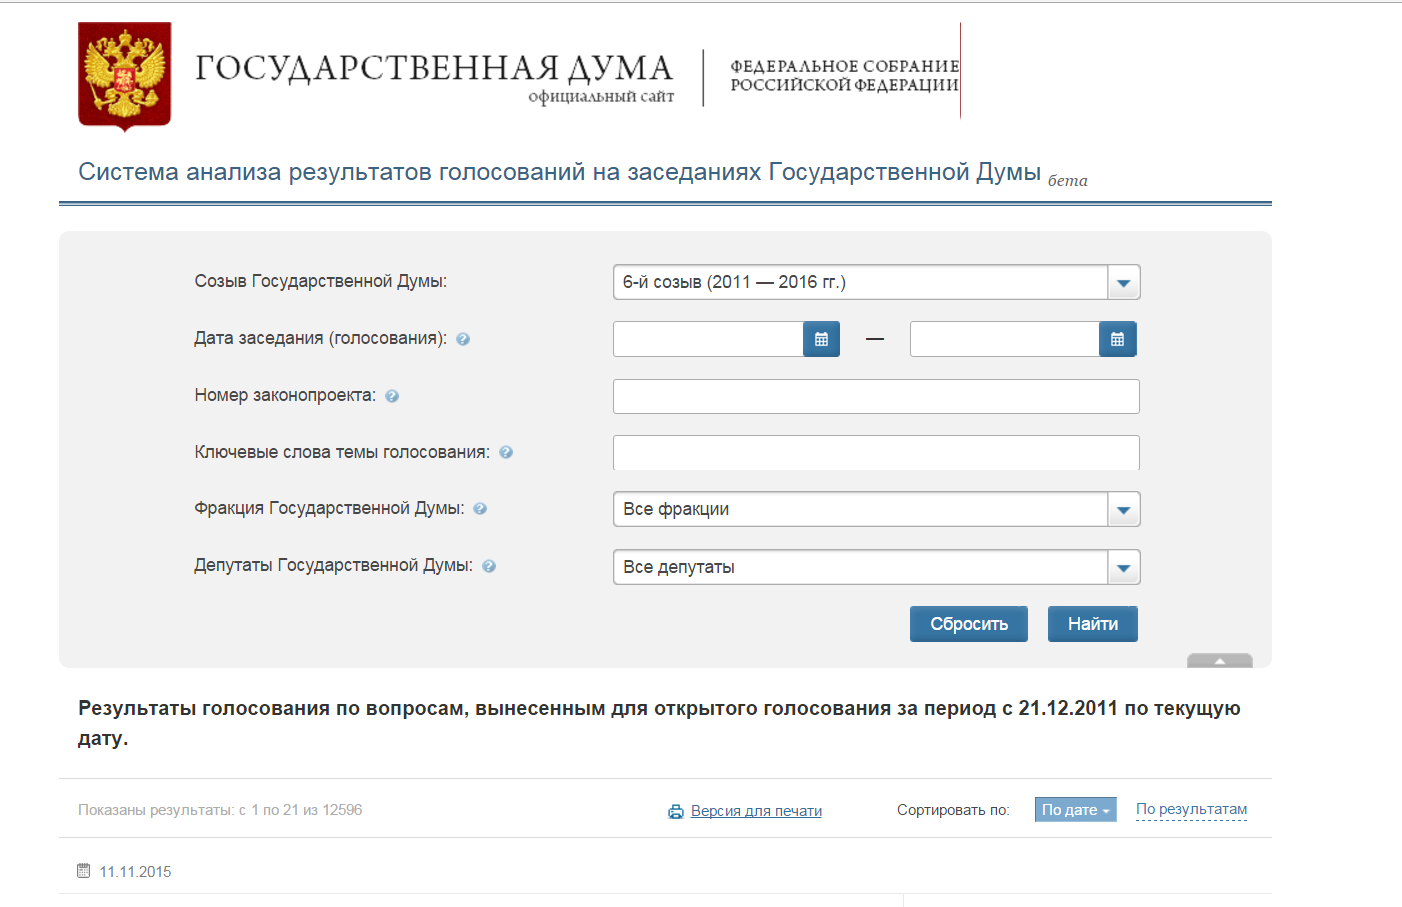 Документы гов ру. Регистрационный номер законопроекта от Госдумы. Http://vote.Duma.gov.ru/vote/117112.